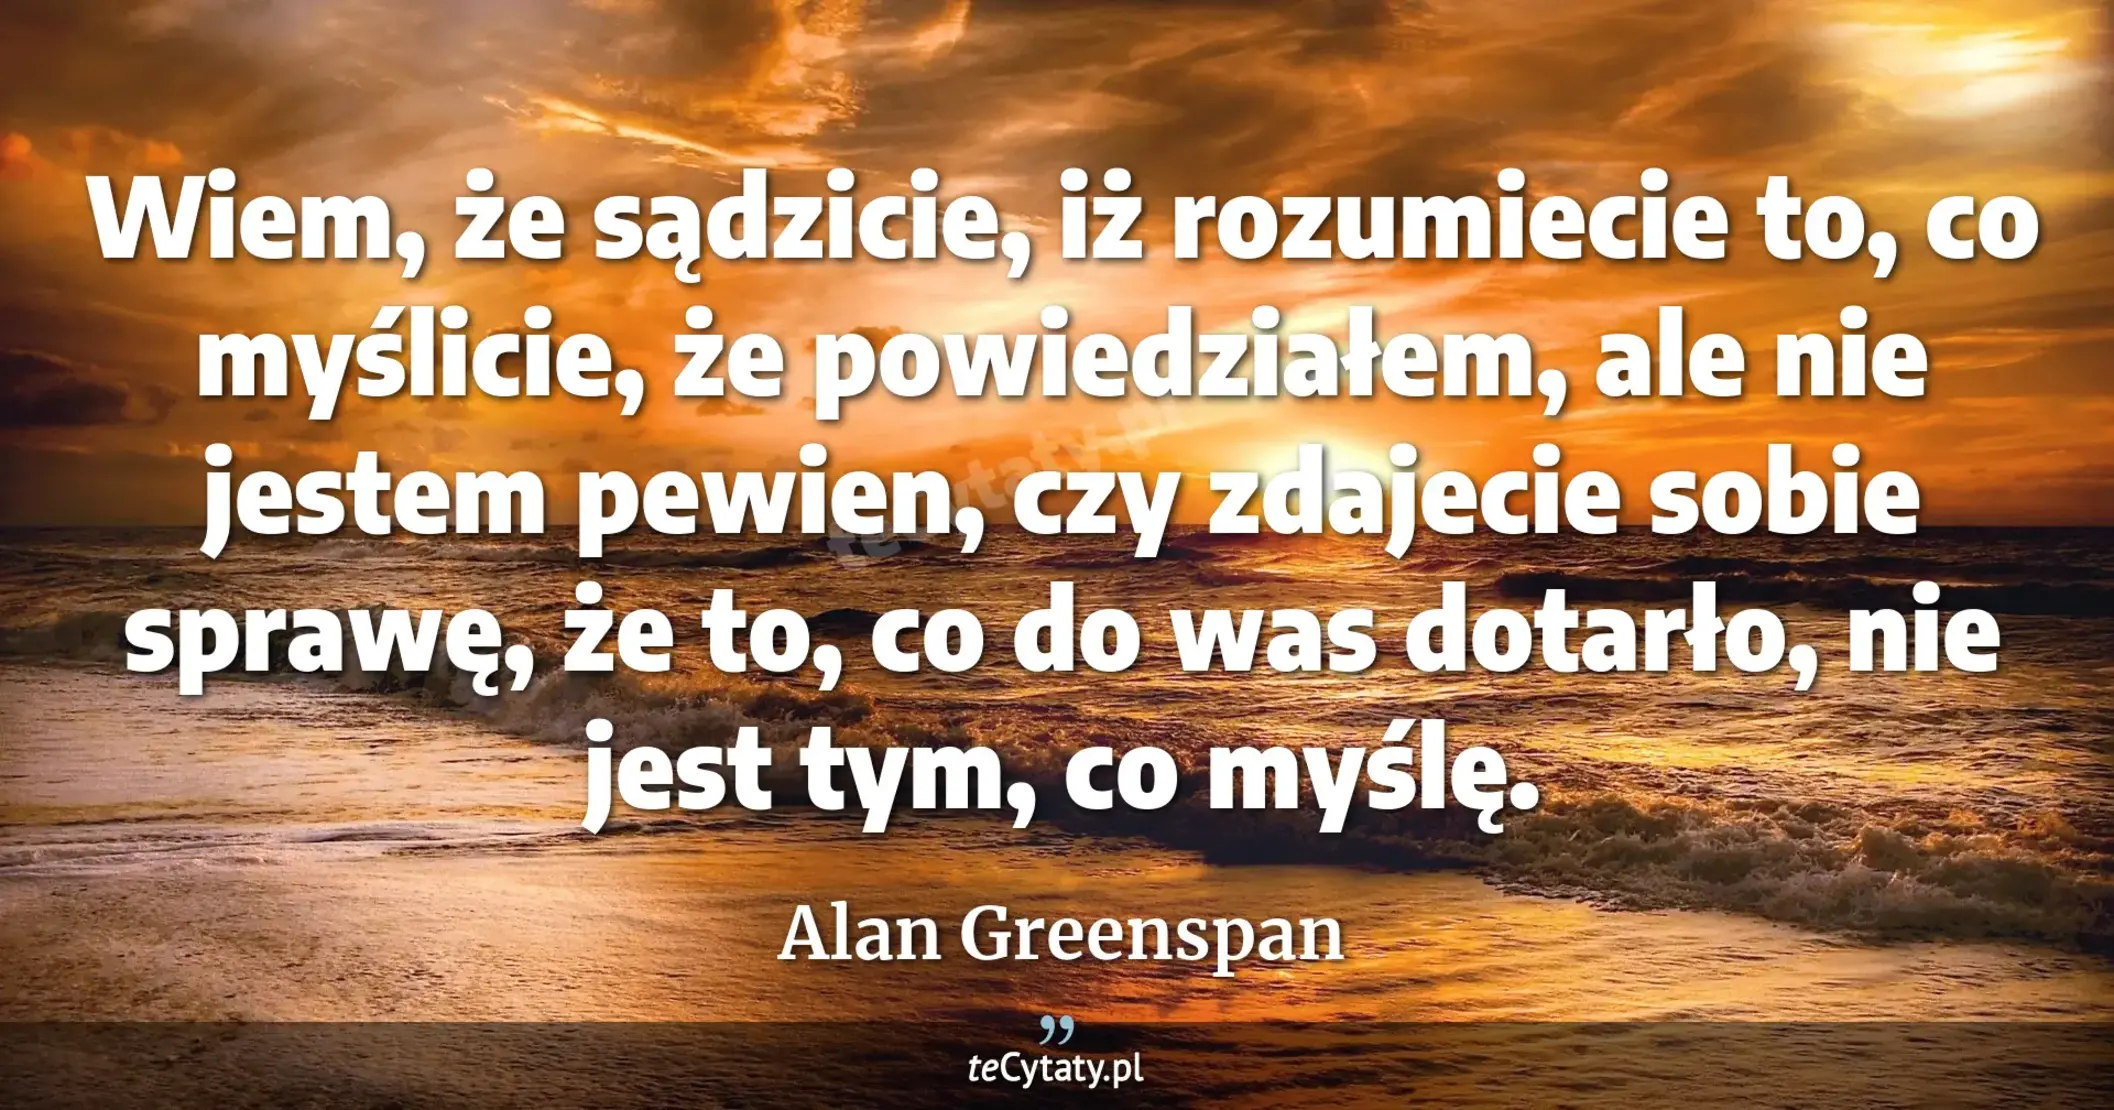 Wiem, że sądzicie, iż rozumiecie to, co myślicie, że powiedziałem, ale nie jestem pewien, czy zdajecie sobie sprawę, że to, co do was dotarło, nie jest tym, co myślę. - Alan Greenspan